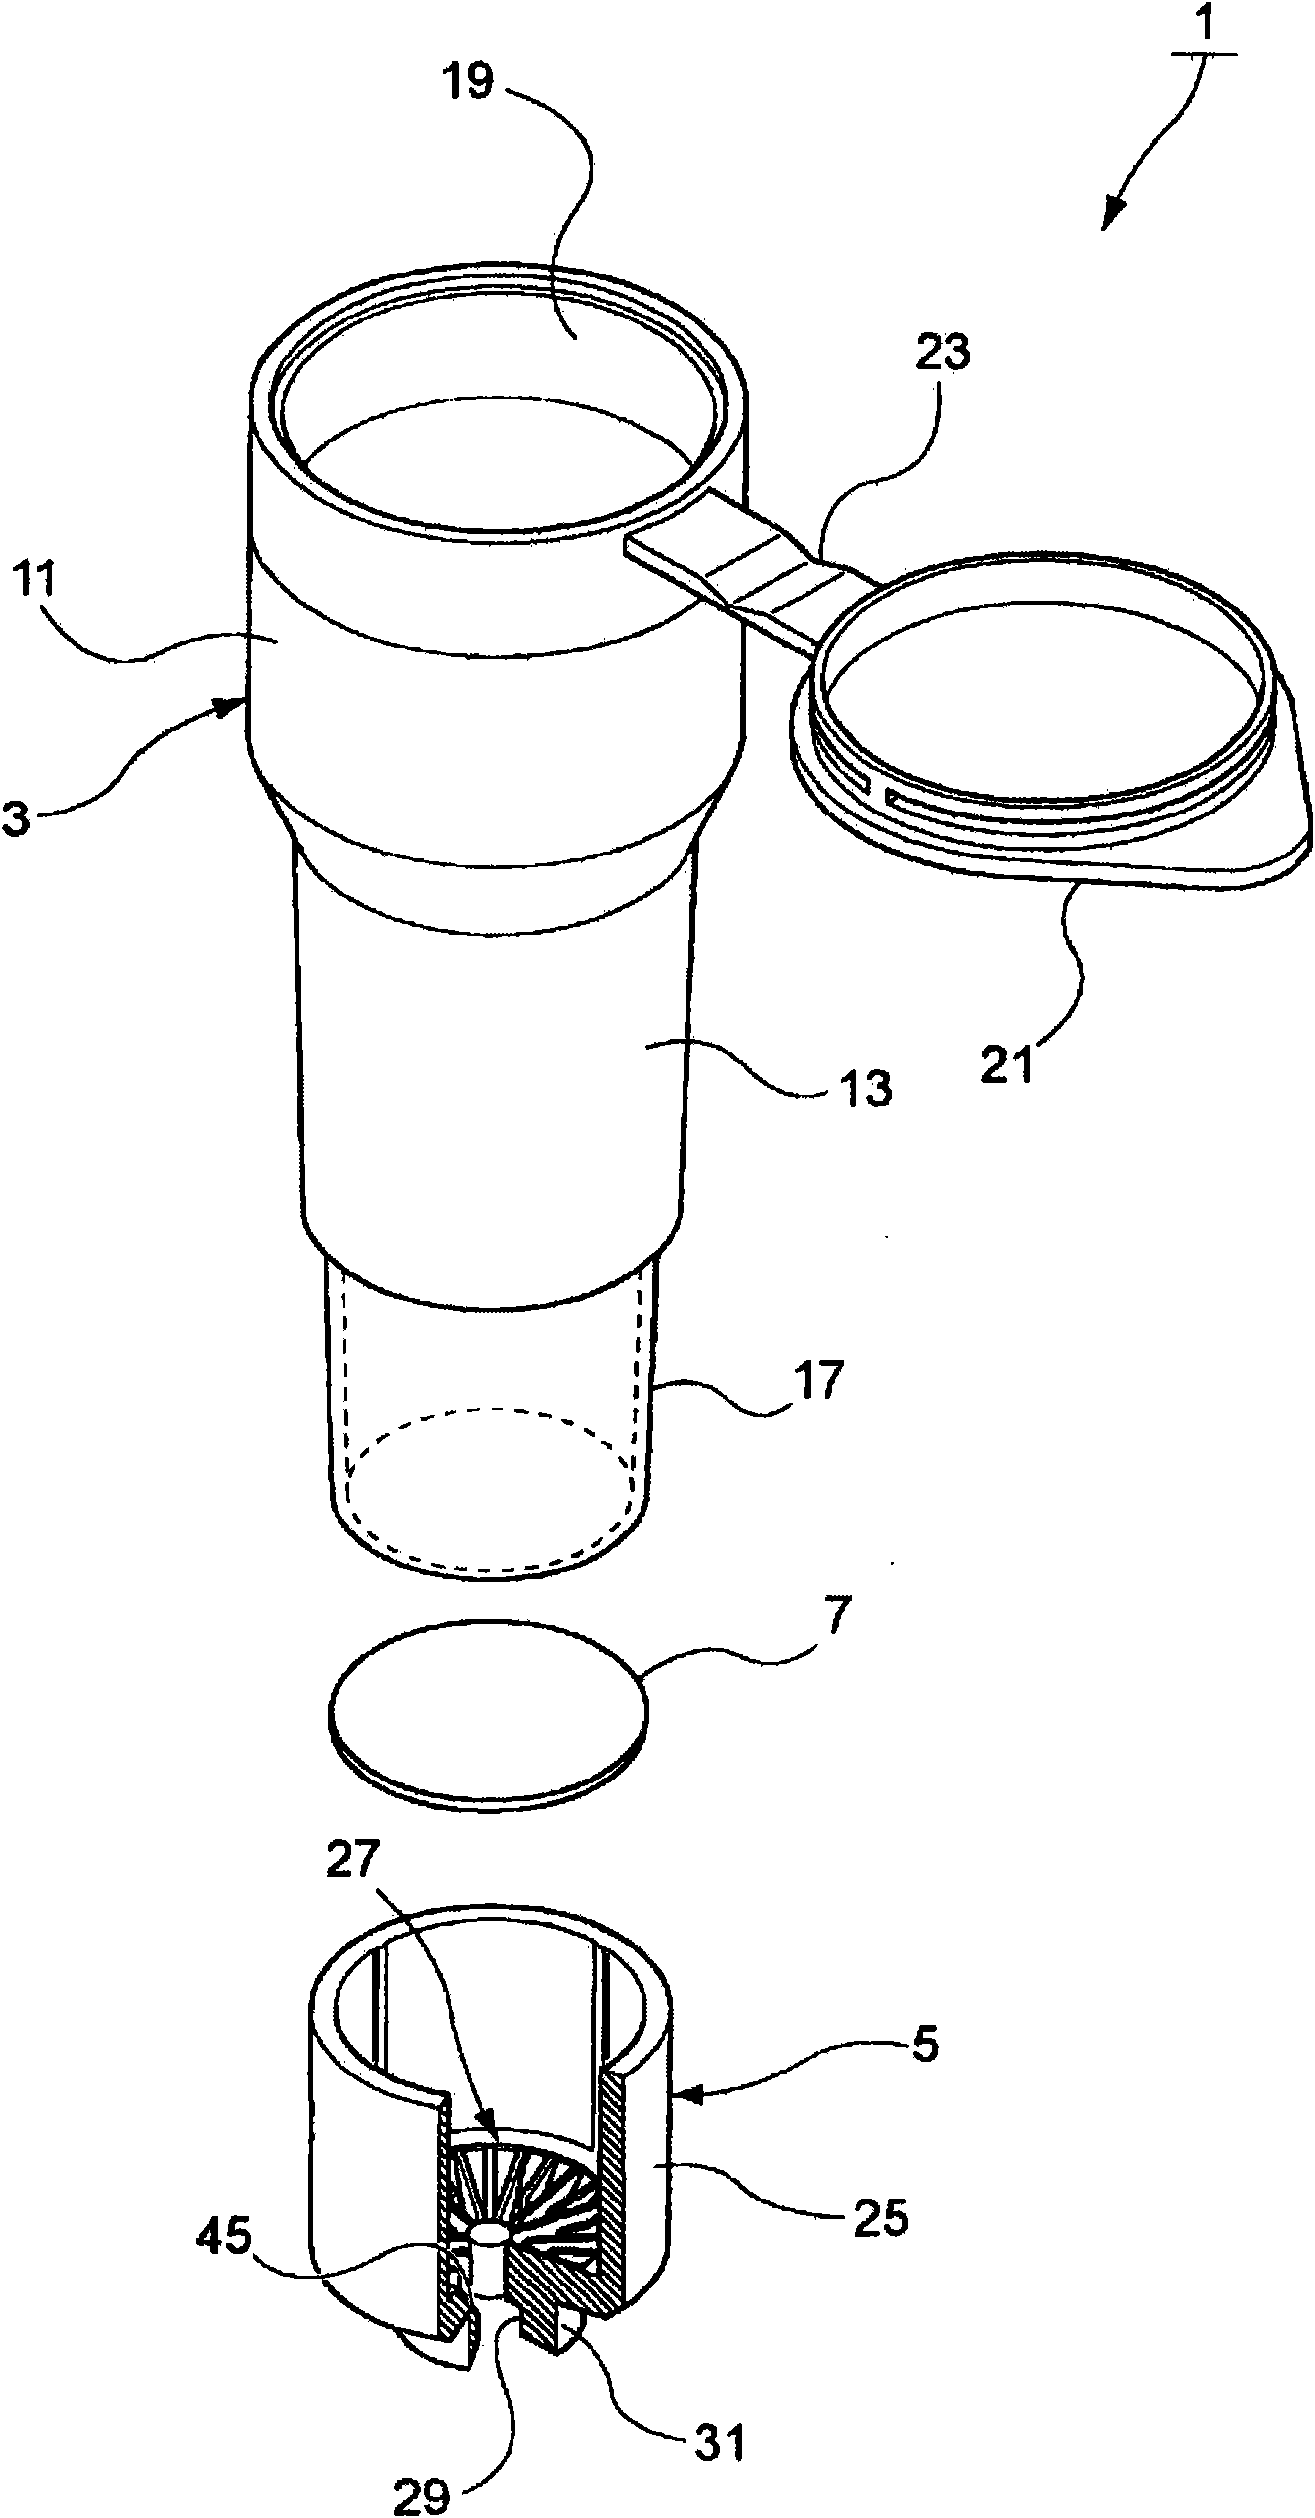 Porous filter cartridge